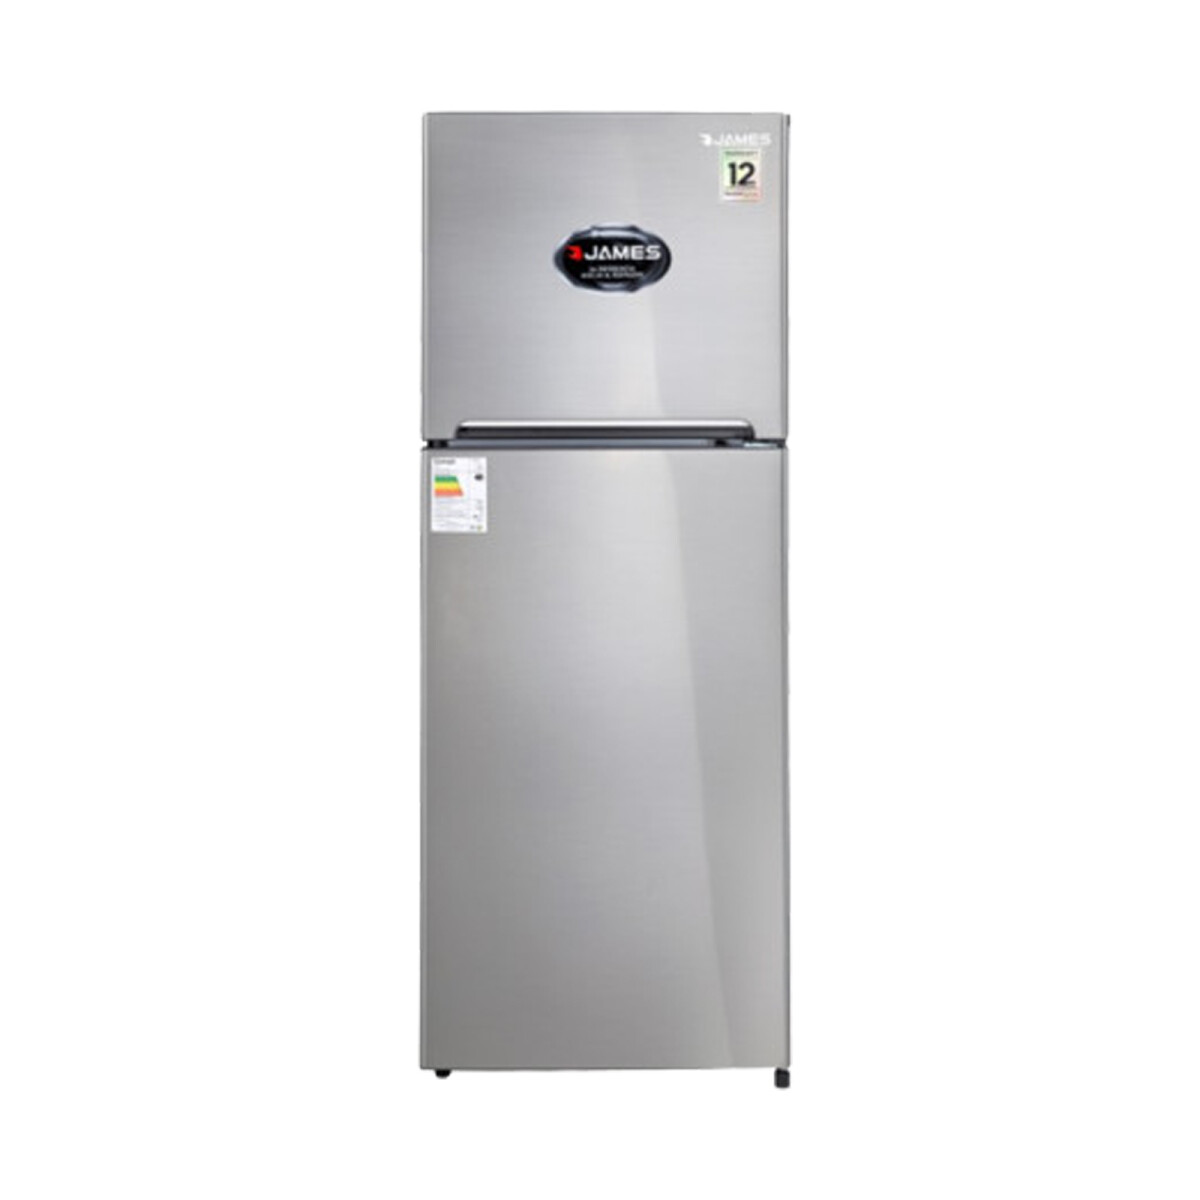 Refrigerador James Jn400 Inox Disc 